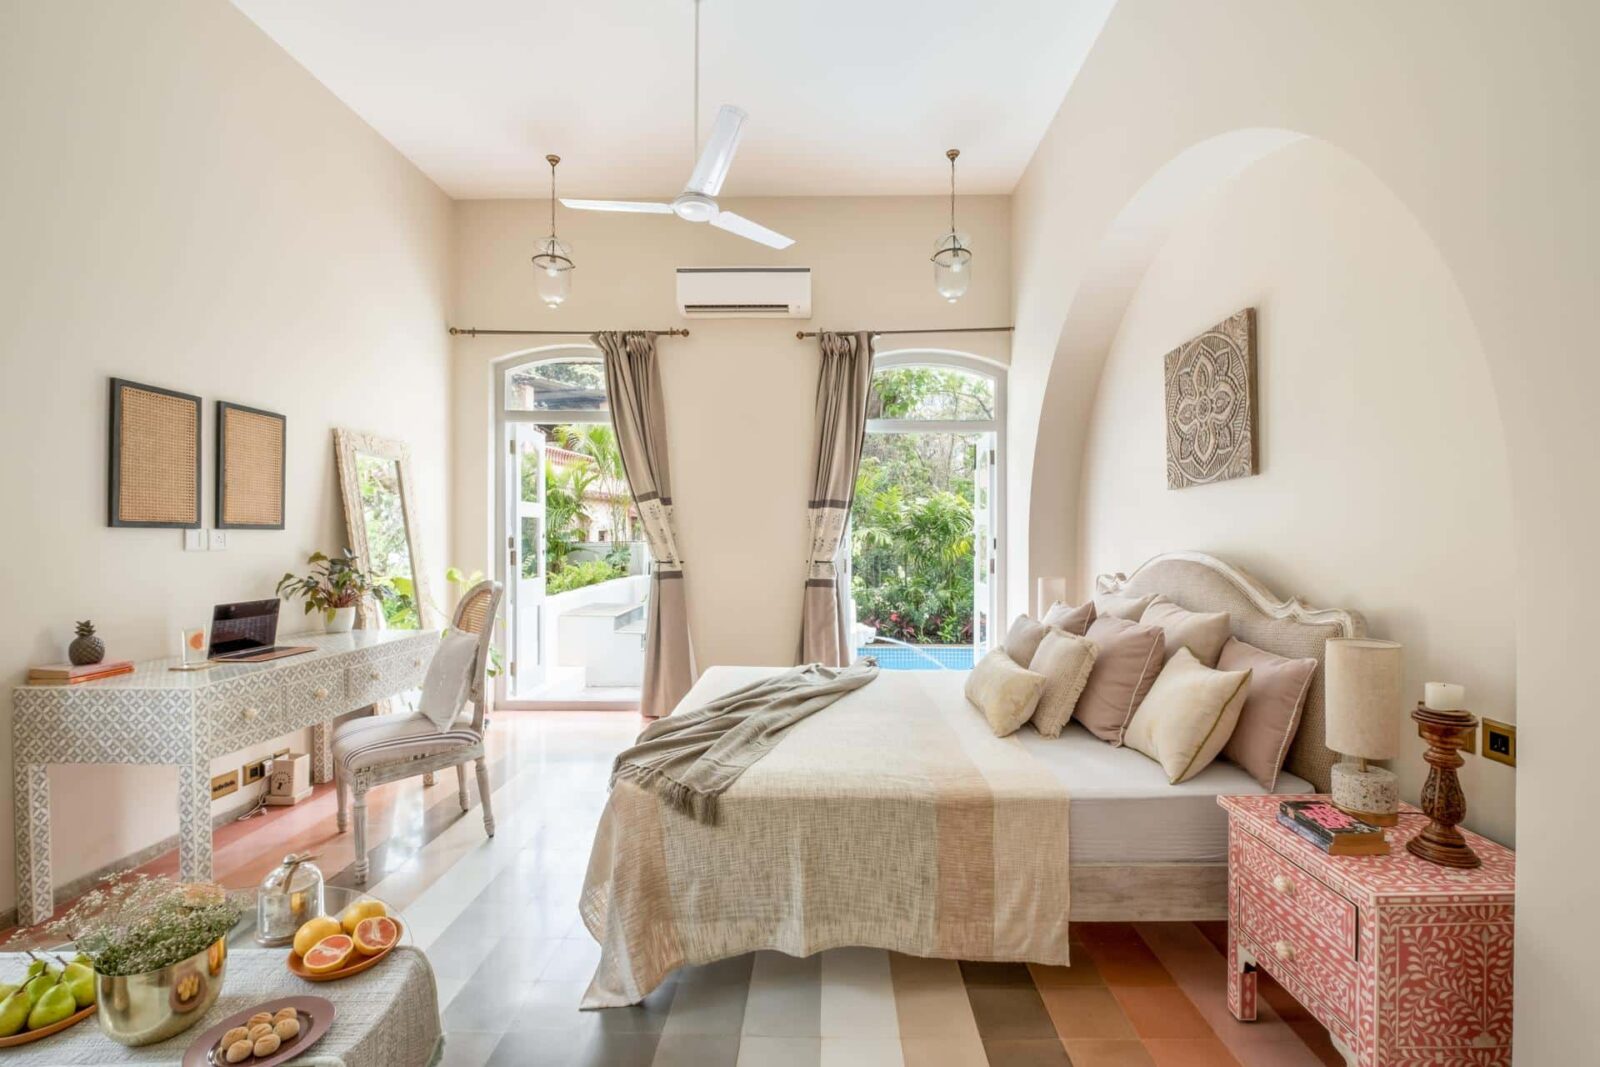 Silvio D - Villas for Sale in North Goa - Elegant Bedroom View